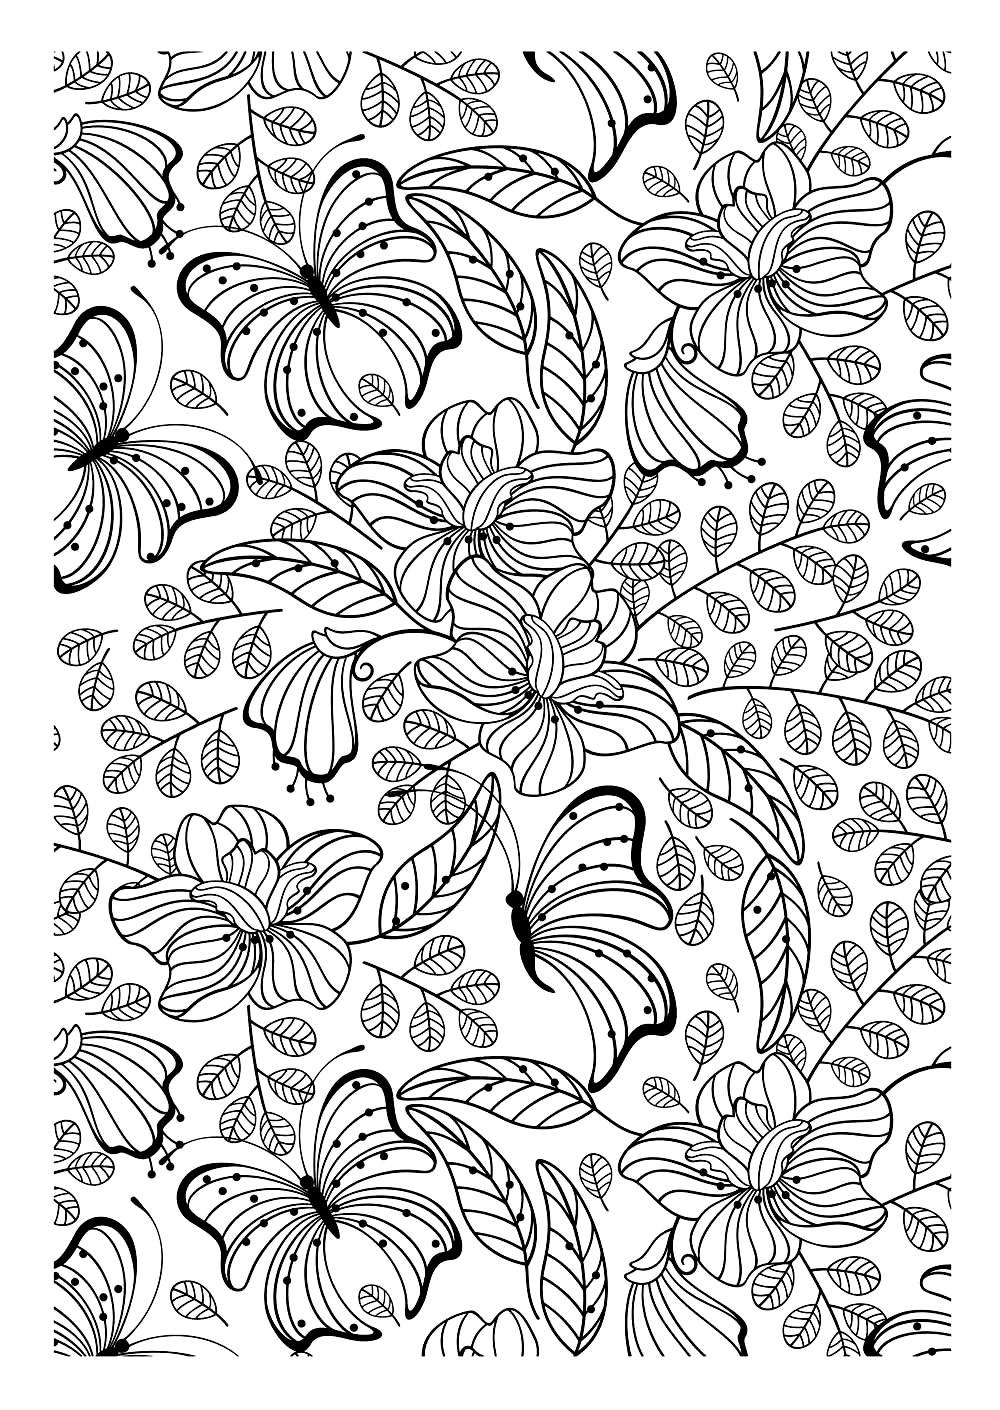 Encore une image à imprimer et colorier remplie de jolies feuilles, fleurs et papillons, qui constitue à coup sûr un coloriage adulte intéressant à réaliser